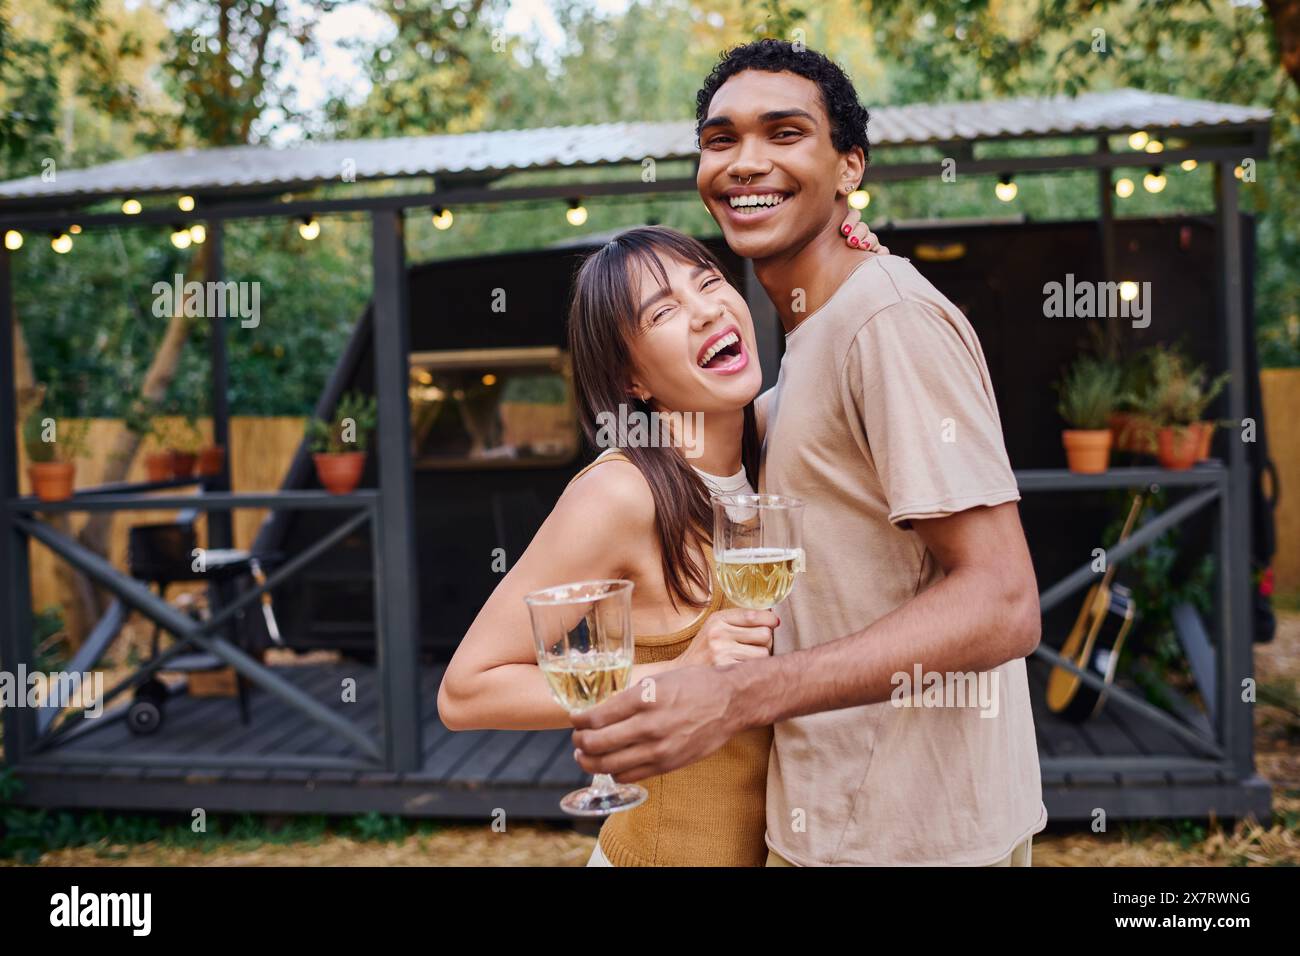 Ein Mann und eine Frau halten ein Glas Wein und genießen einen romantischen Moment zusammen. Stockfoto